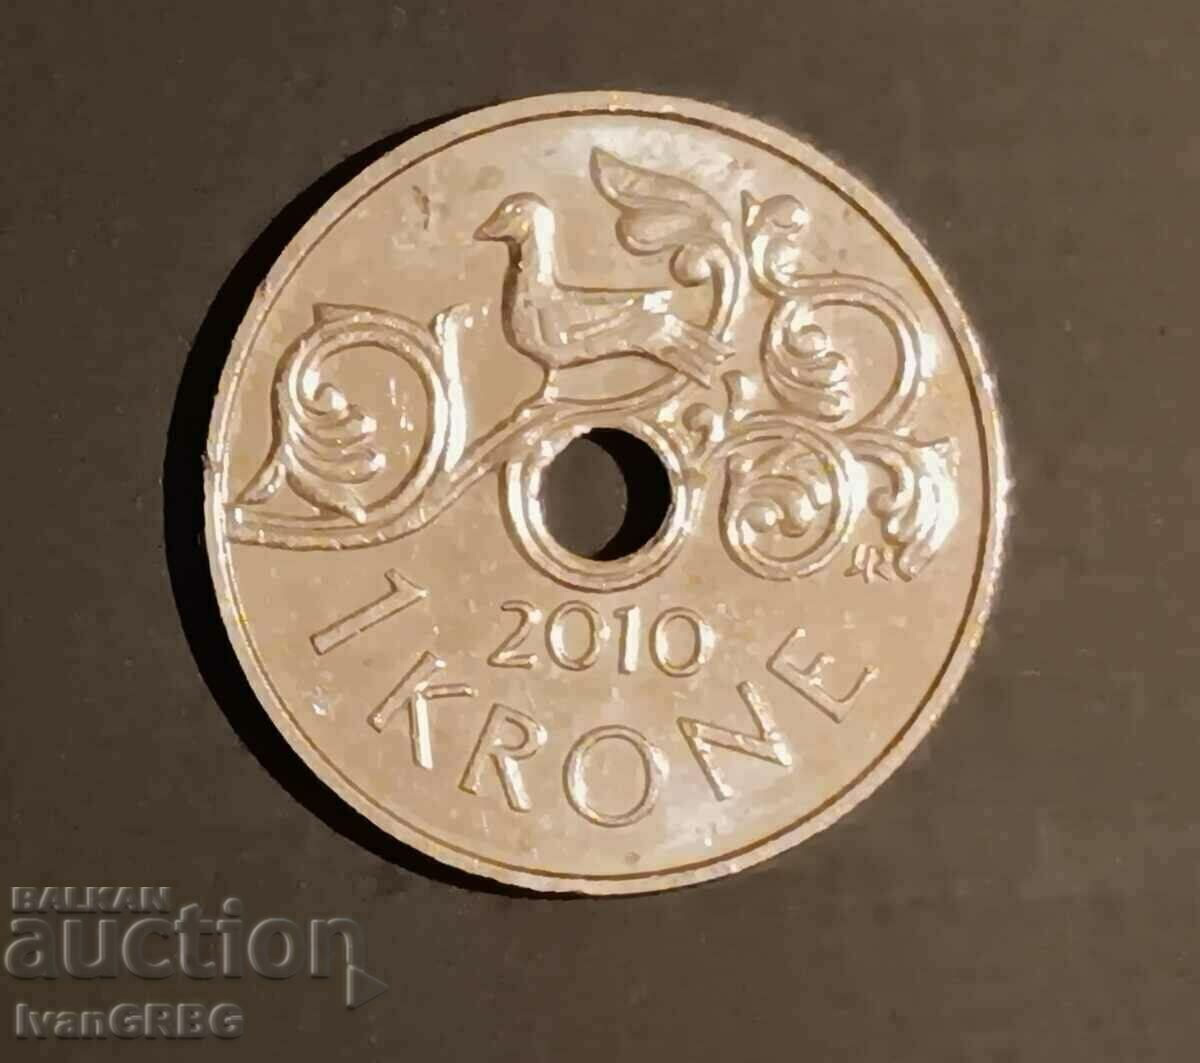 1 kroner 2010 Norway, Harald V